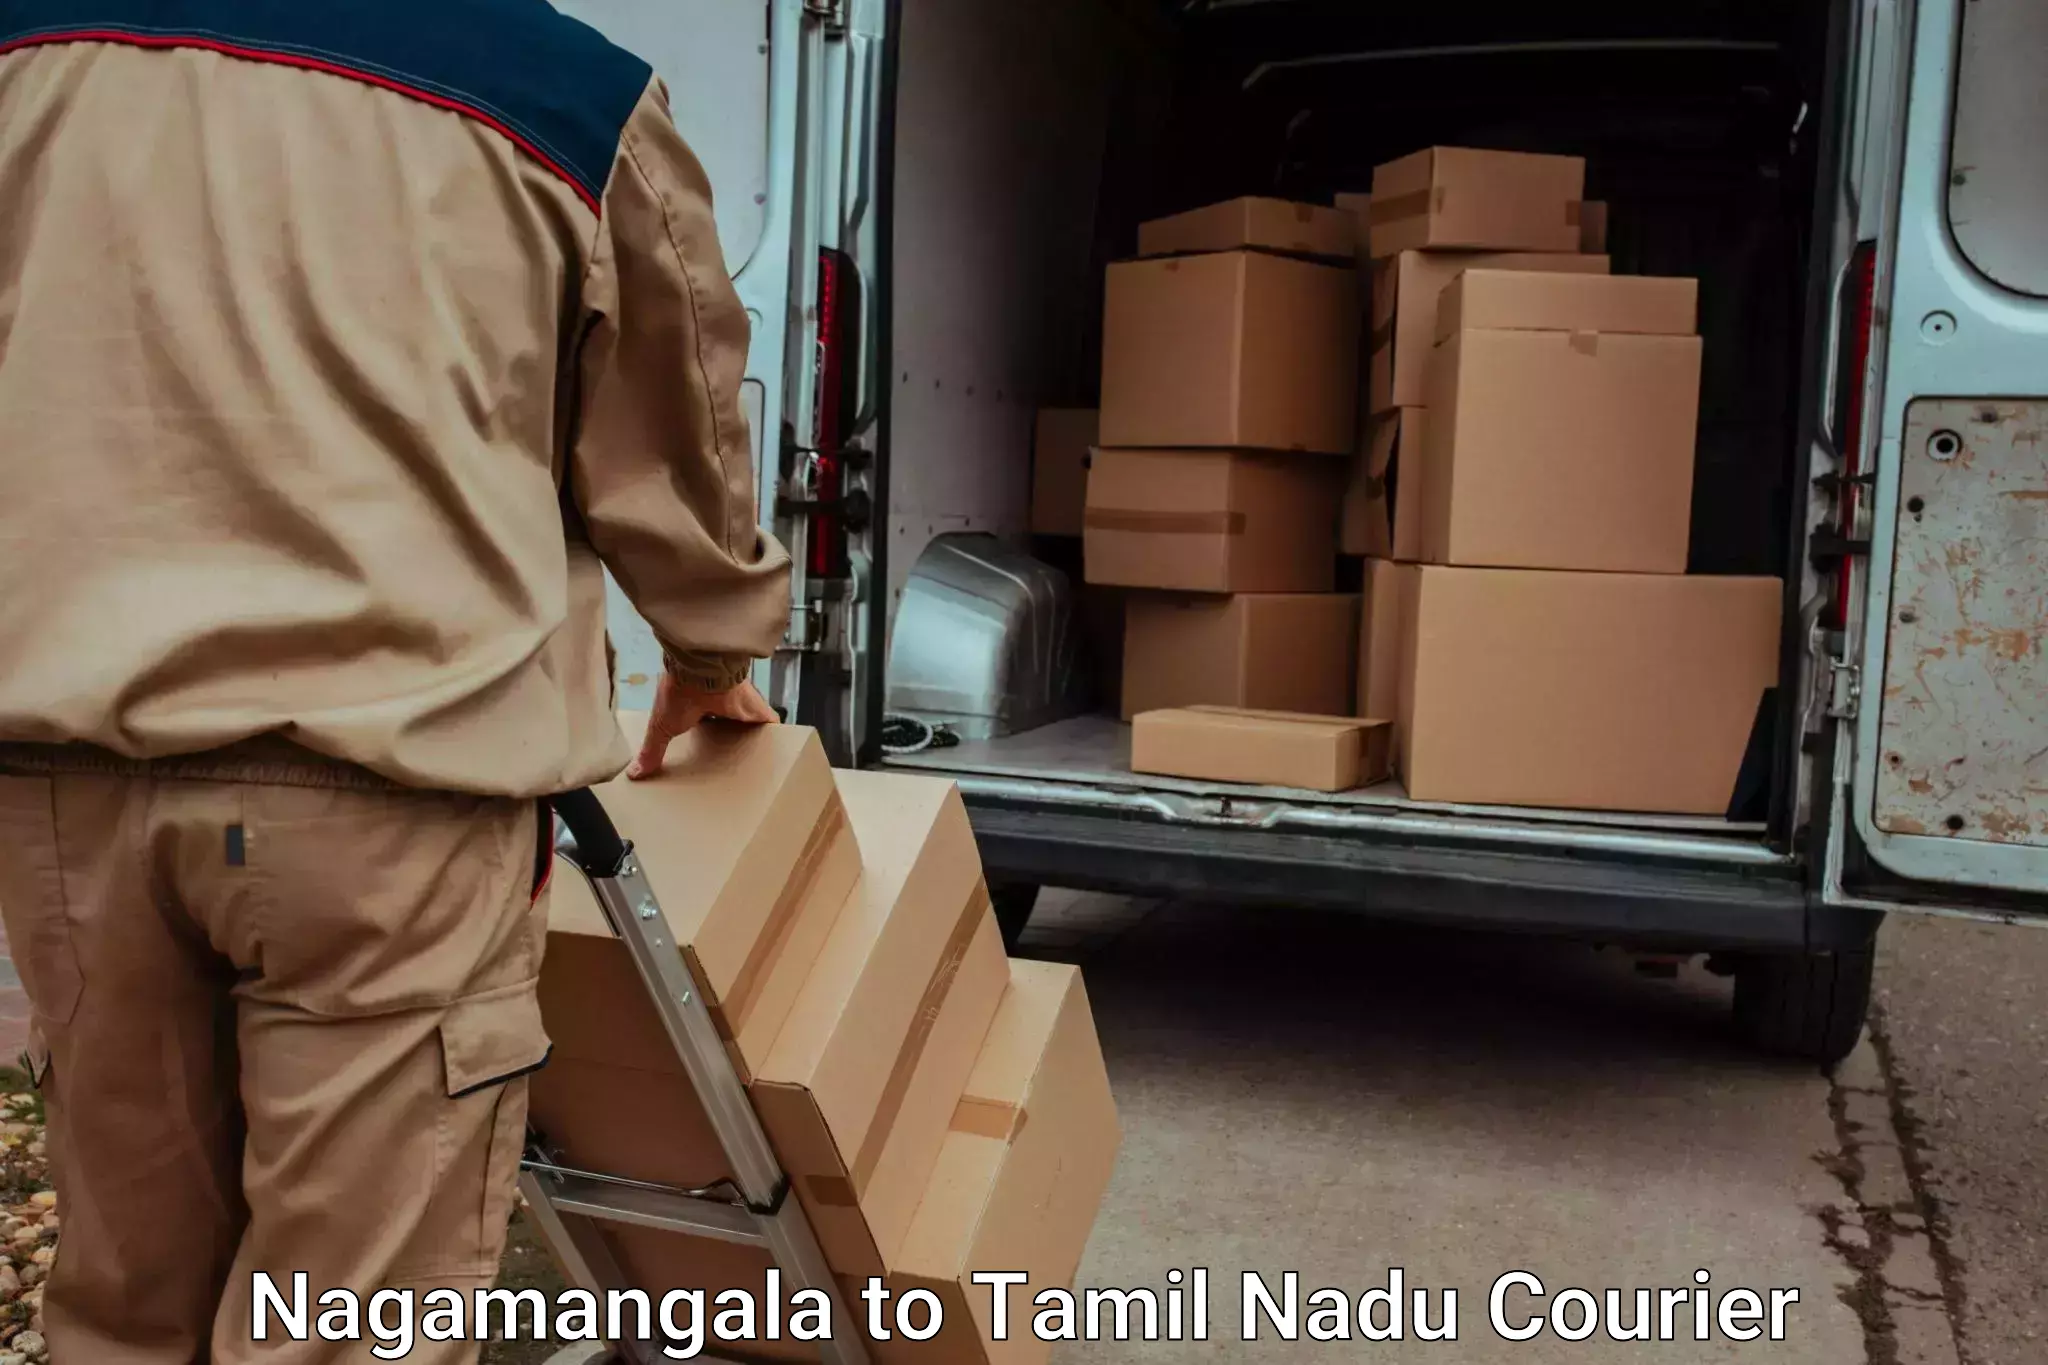 Urgent luggage shipment Nagamangala to Vriddhachalam